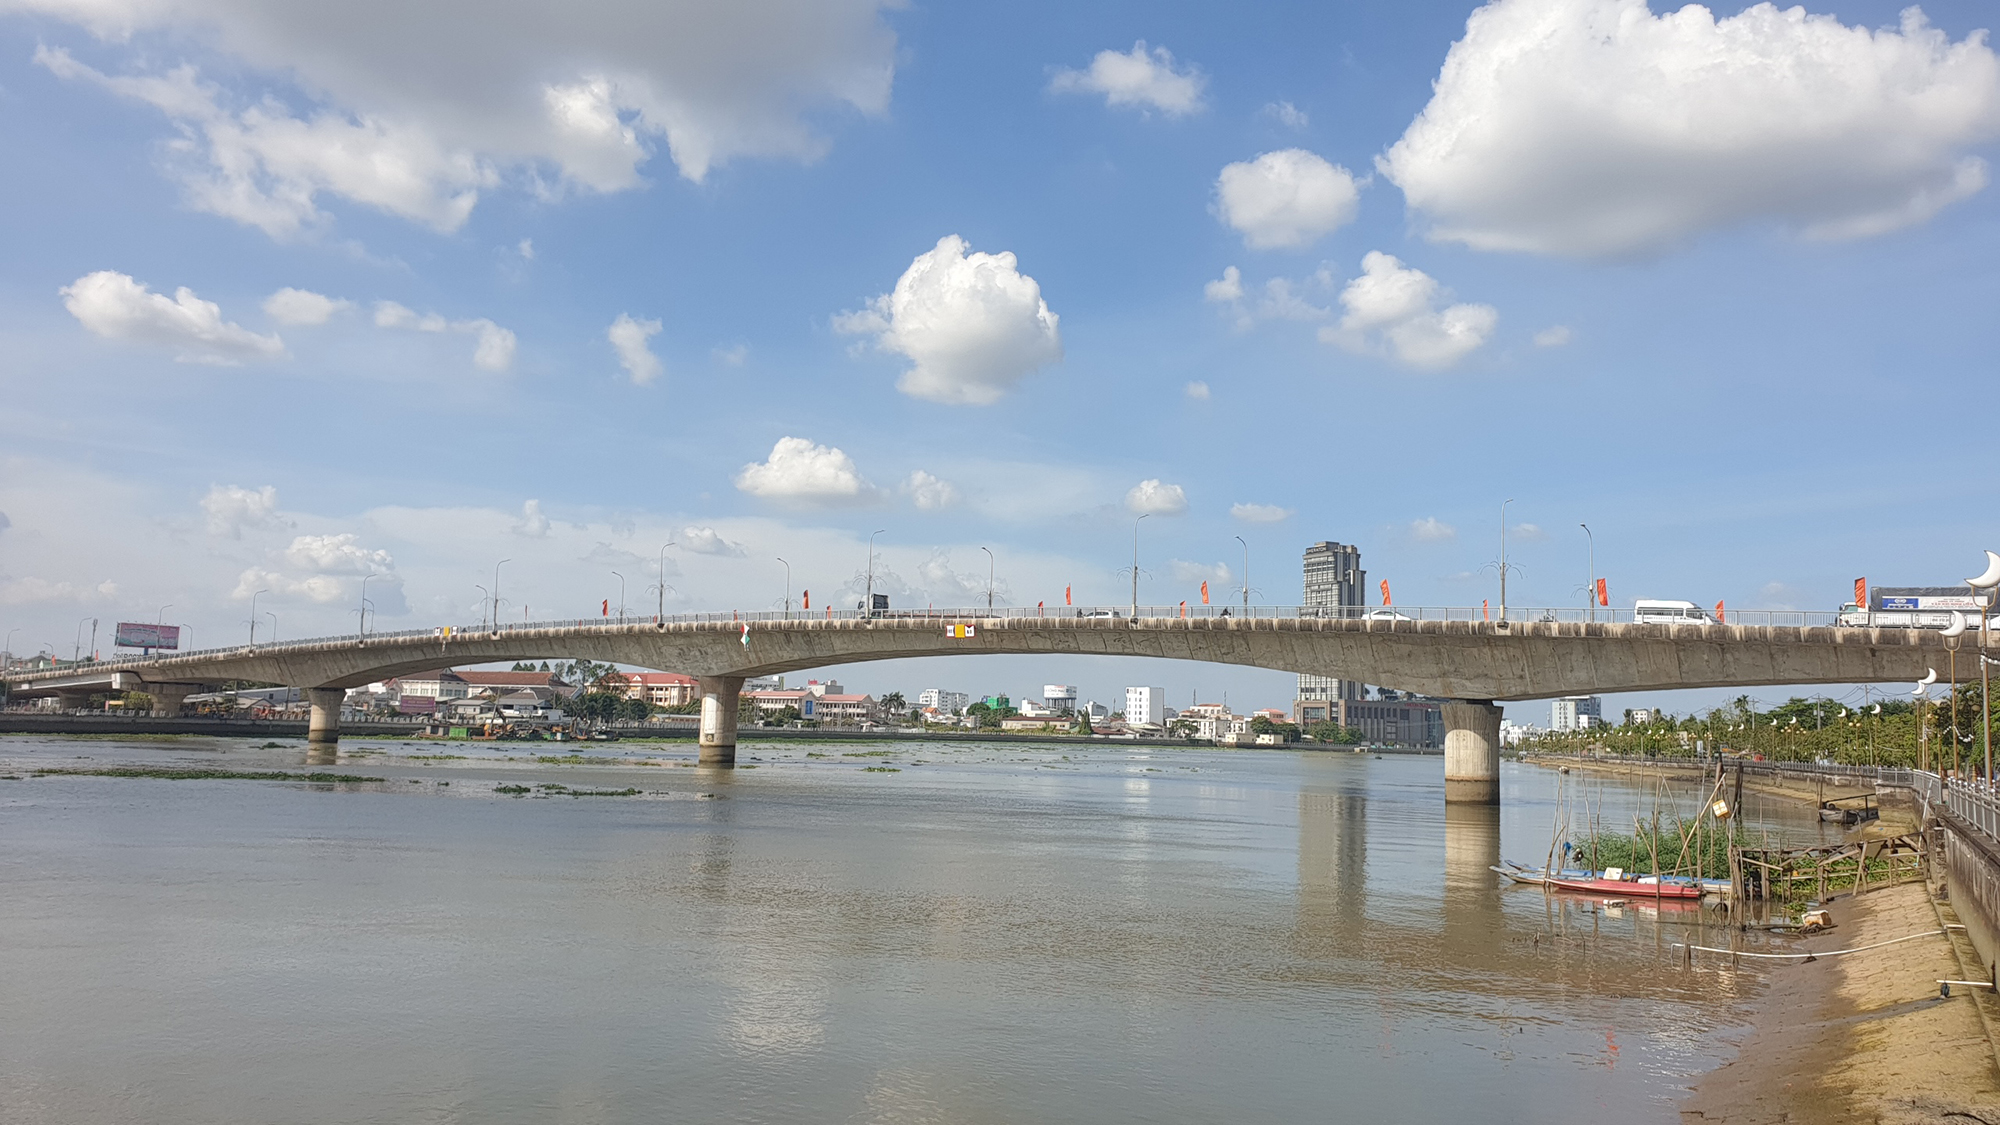 Bốn cây cầu “kéo” bến Ninh Kiều gần chợ nổi Cái Răng- Ảnh 3.